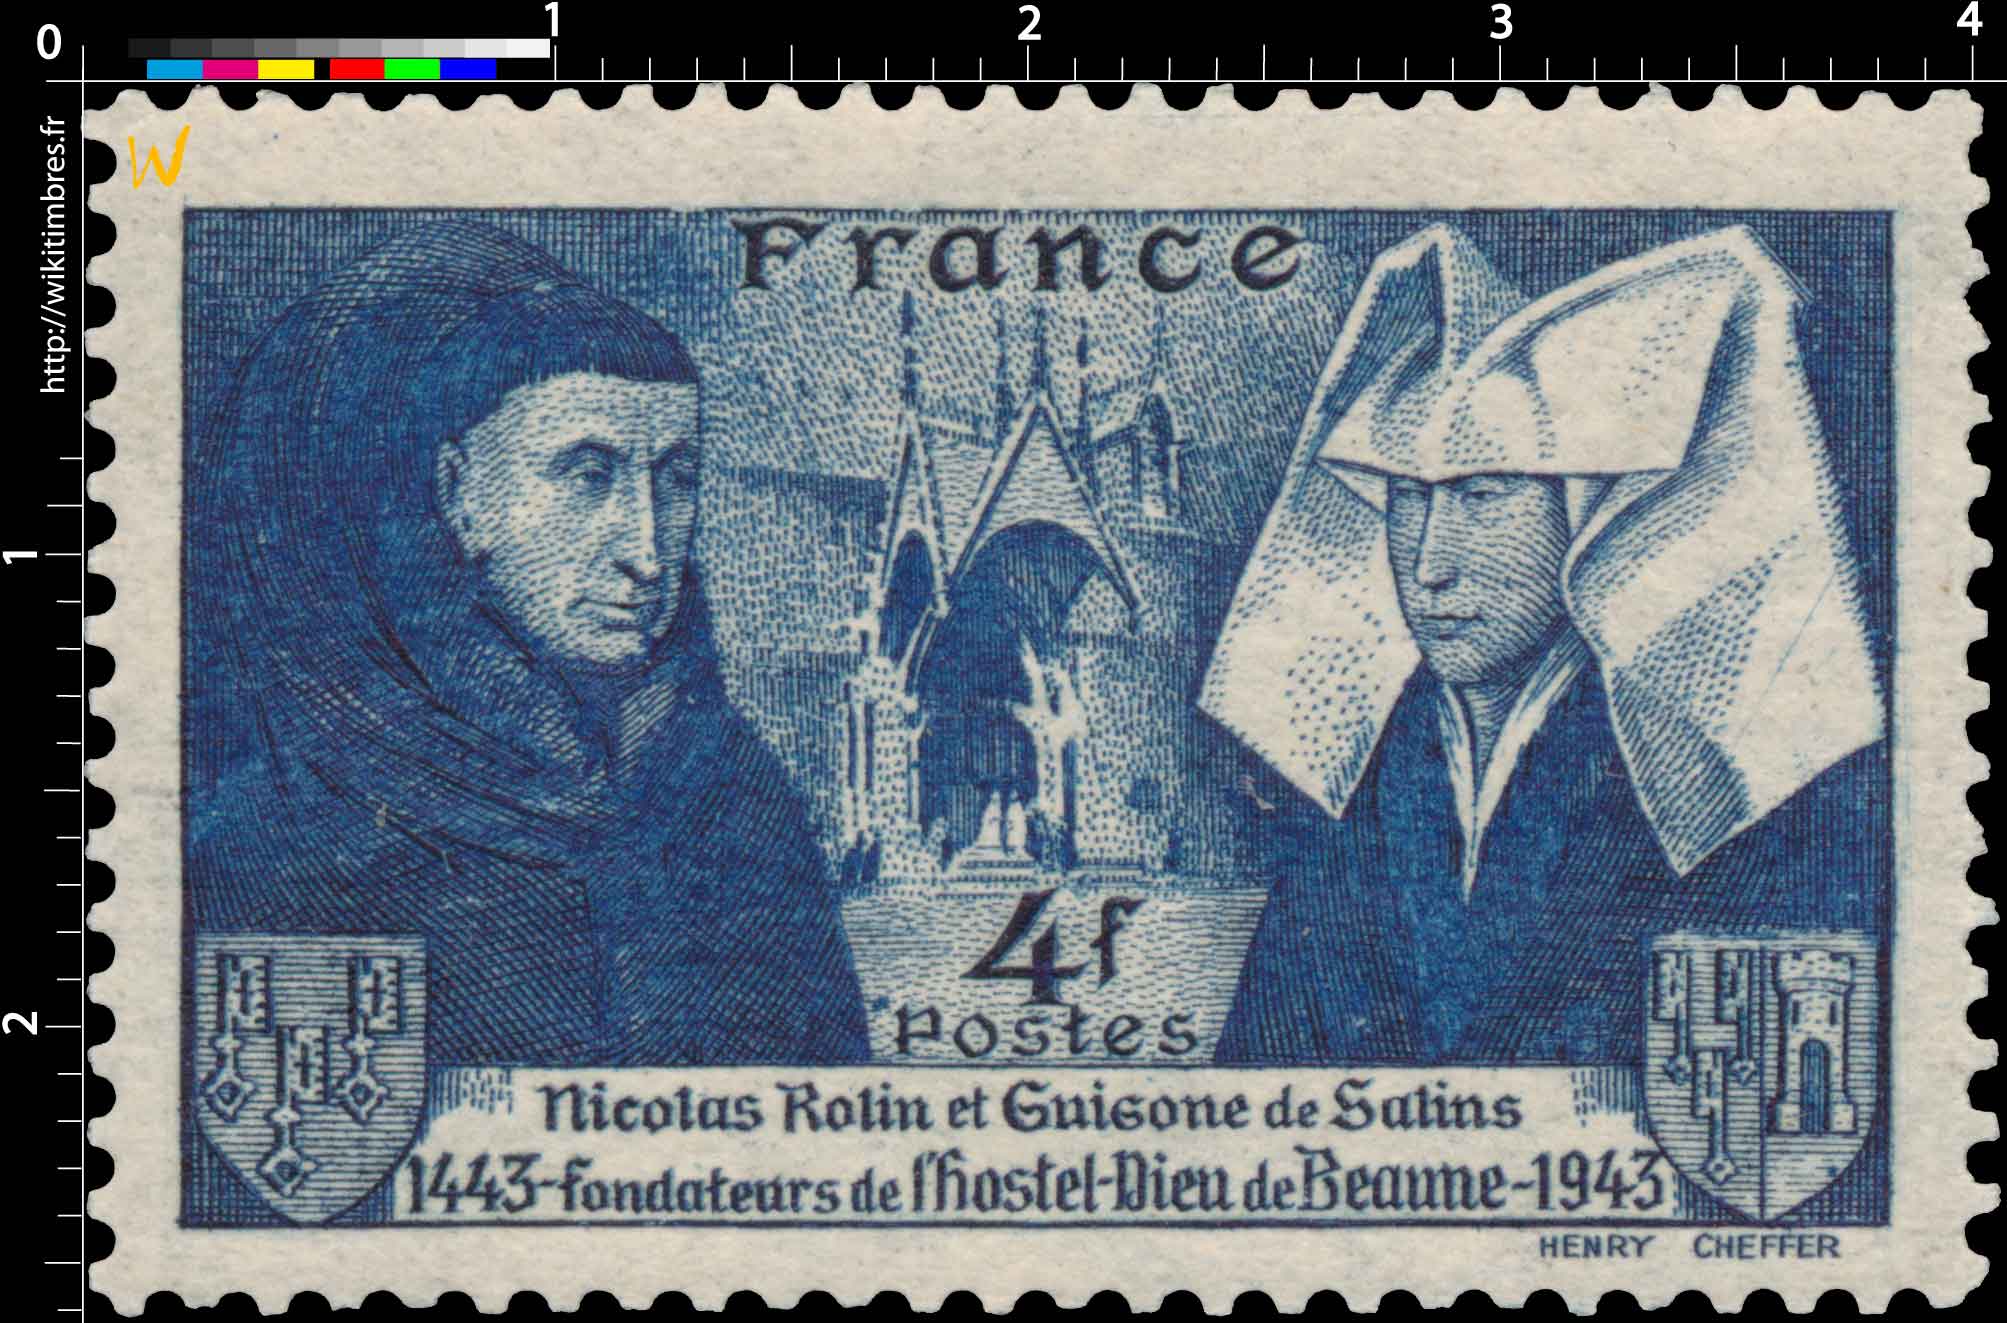 Nicolas Rolin et Guigone de Salins fondateurs de l'hostel-Dieu de Beaune 1443-1943